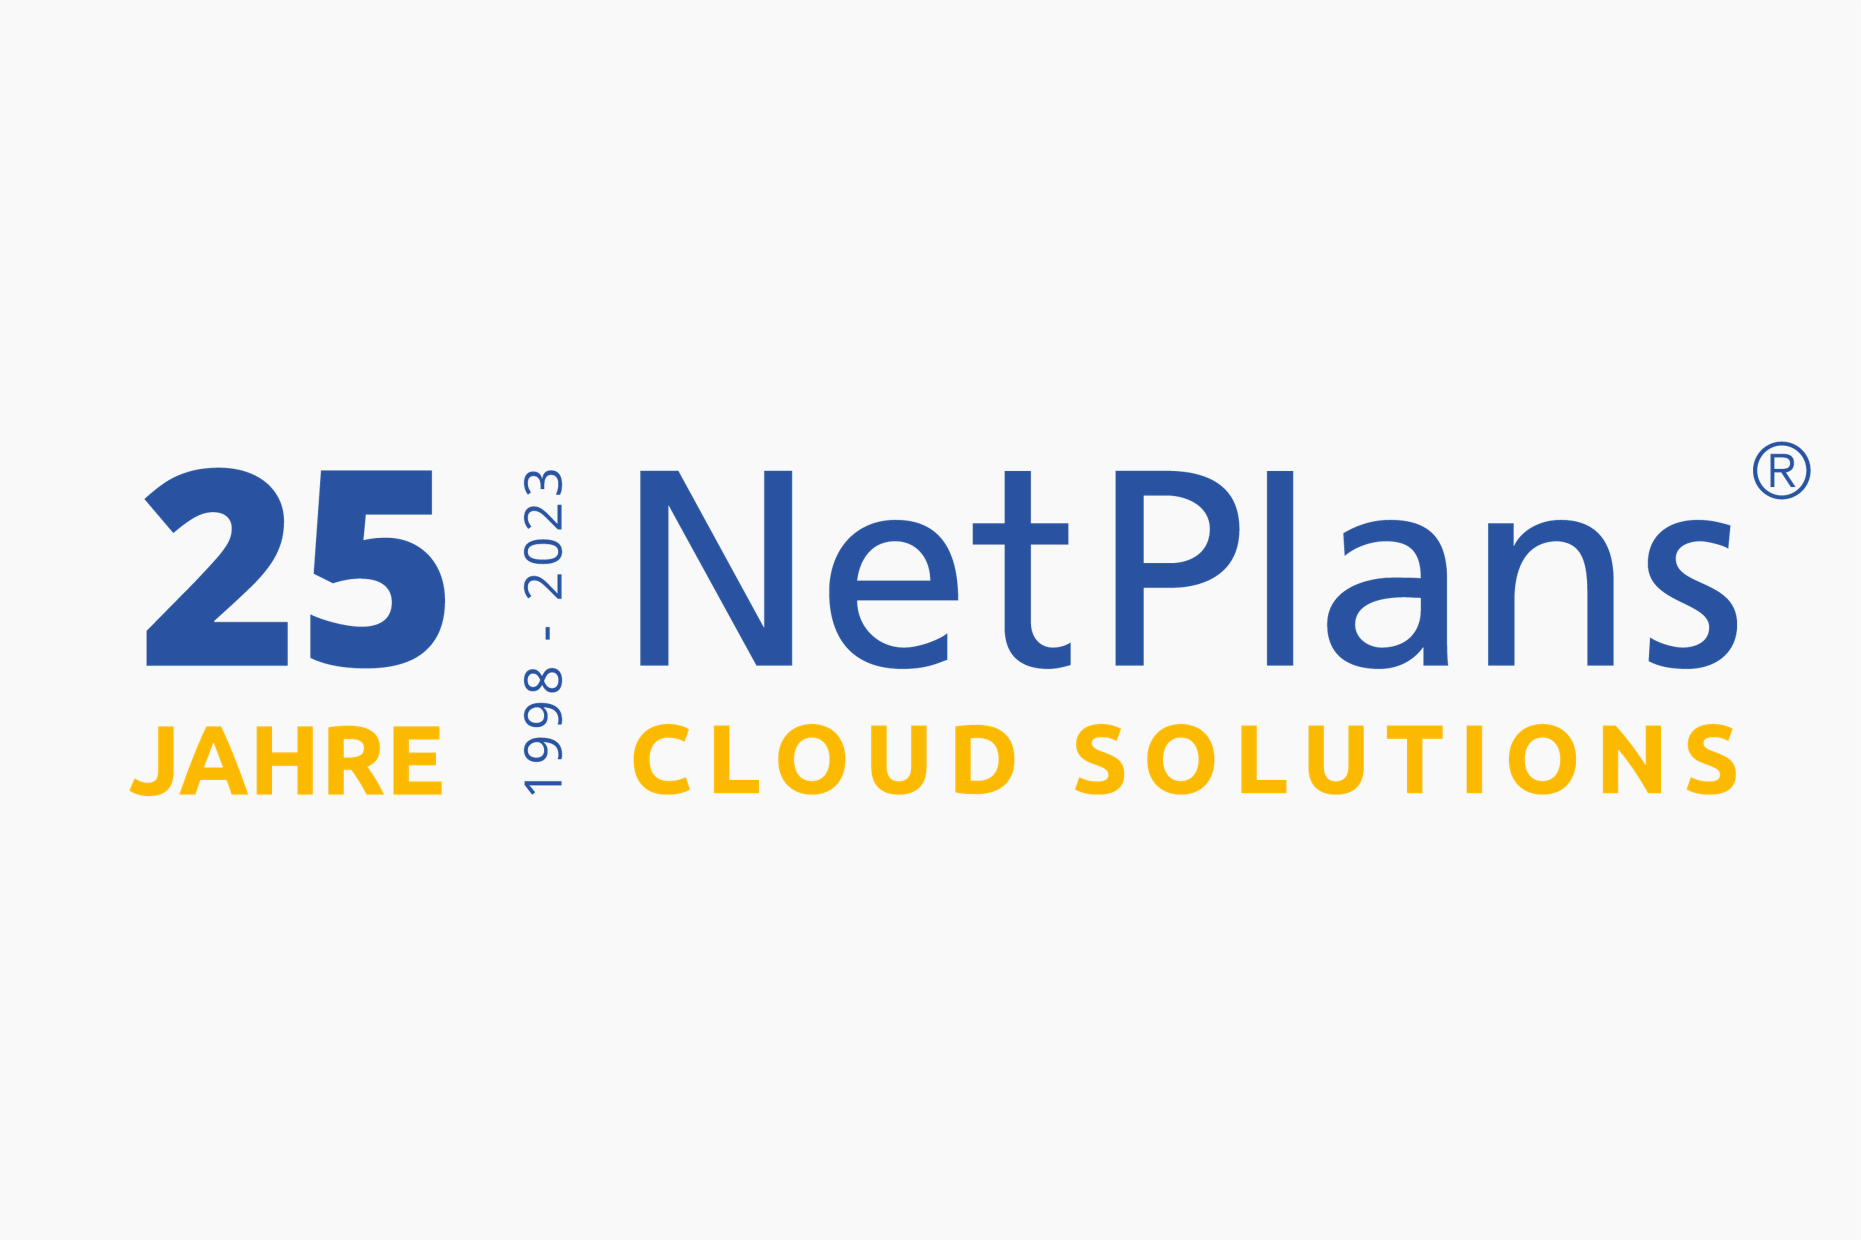 25 Jahre Logo NetPlans. Von 1998 bis 2023